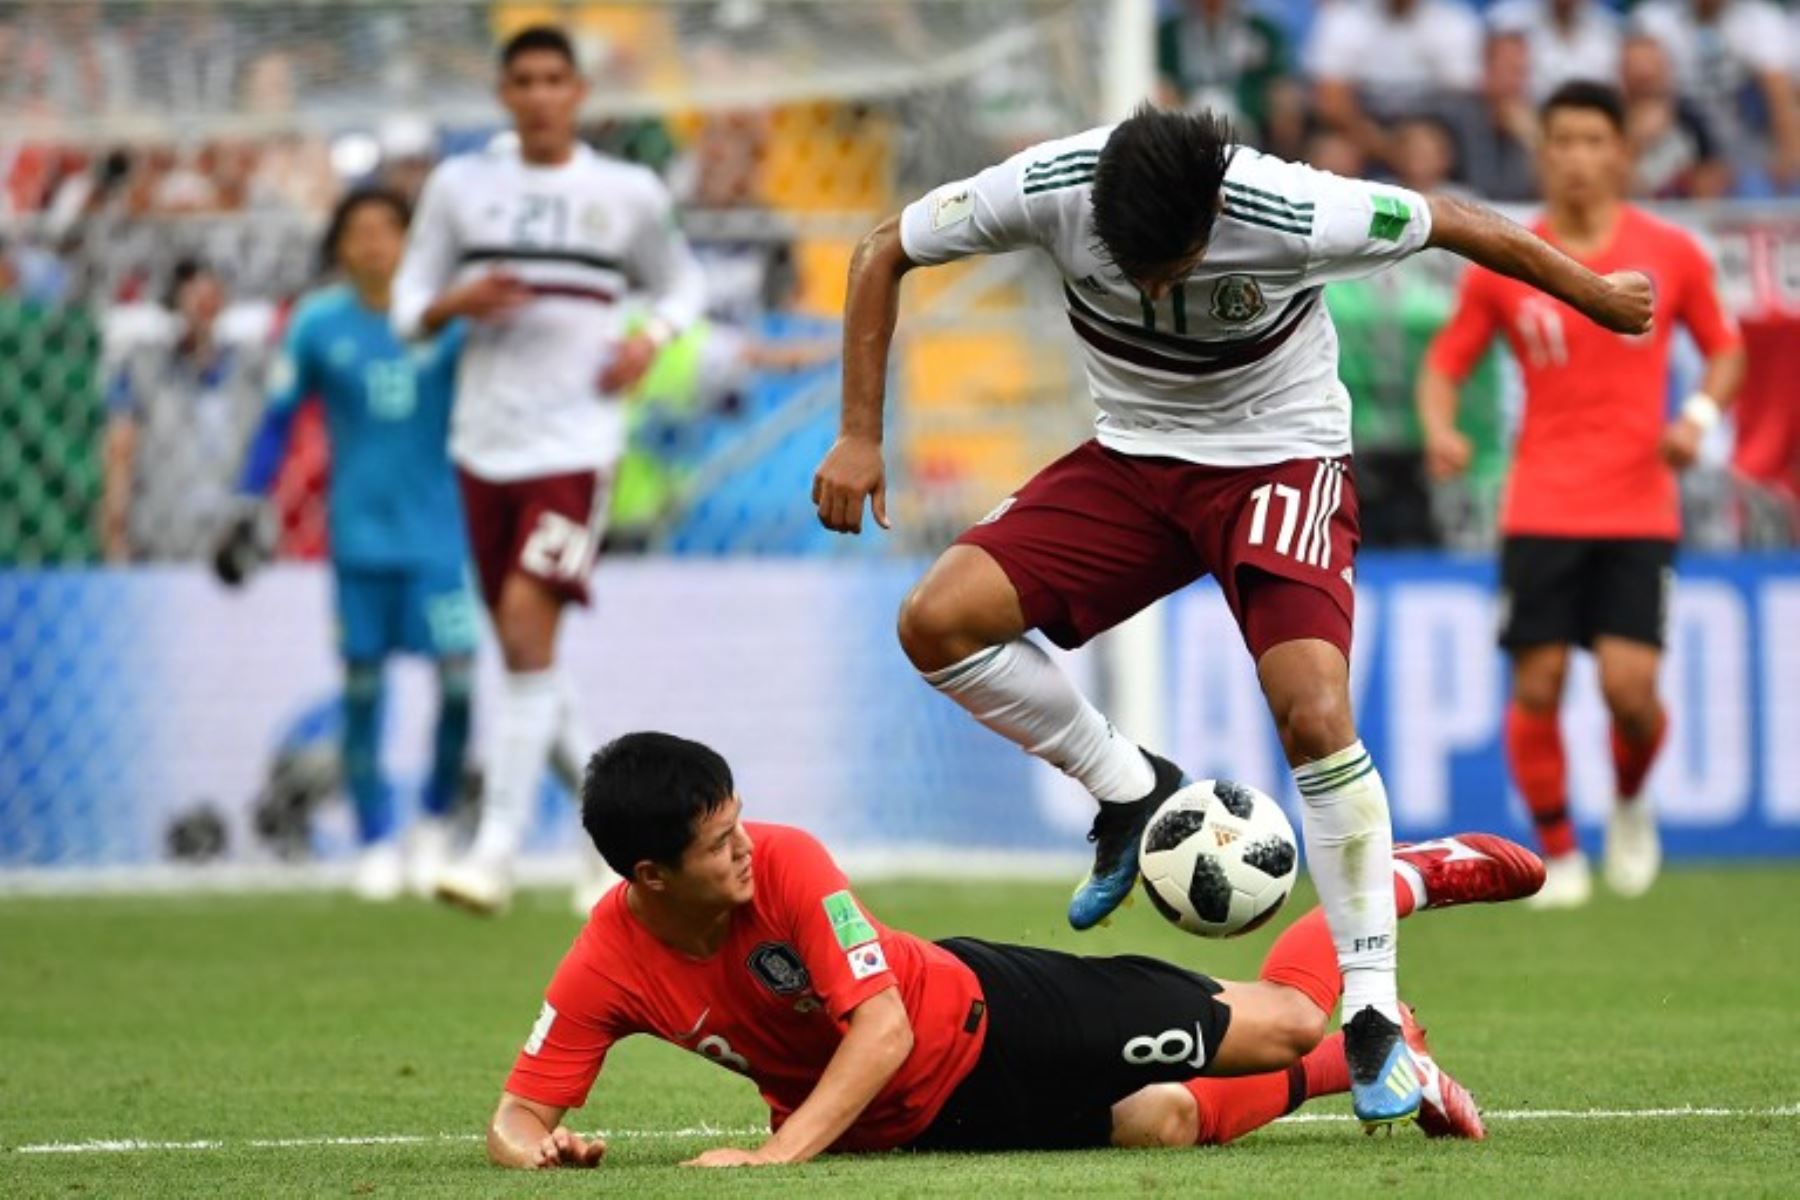 El delantero mexicano Carlos Vela (arriba) compite con el centrocampista surcoreano Ju Se-jong durante el partido de fútbol del Grupo F de la Copa Mundial Rusia 2018 entre Corea del Sur y México.Foto:AFP